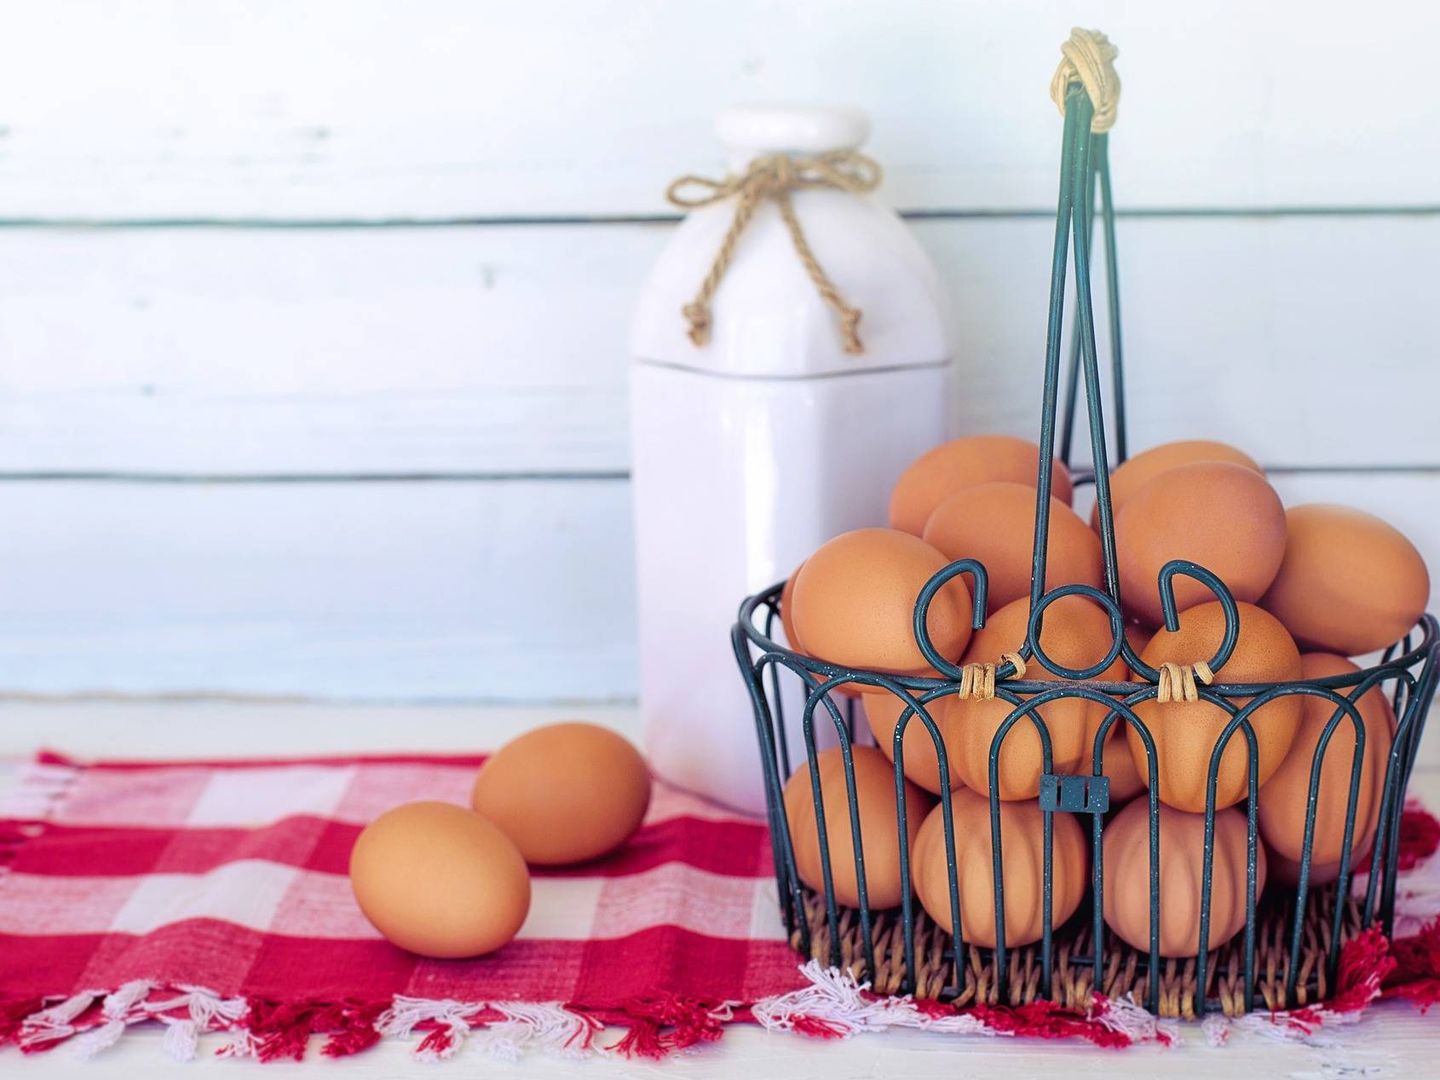 Comer huevos en el desayuno proporcionará muchas proteínas a nuestro cuerpo